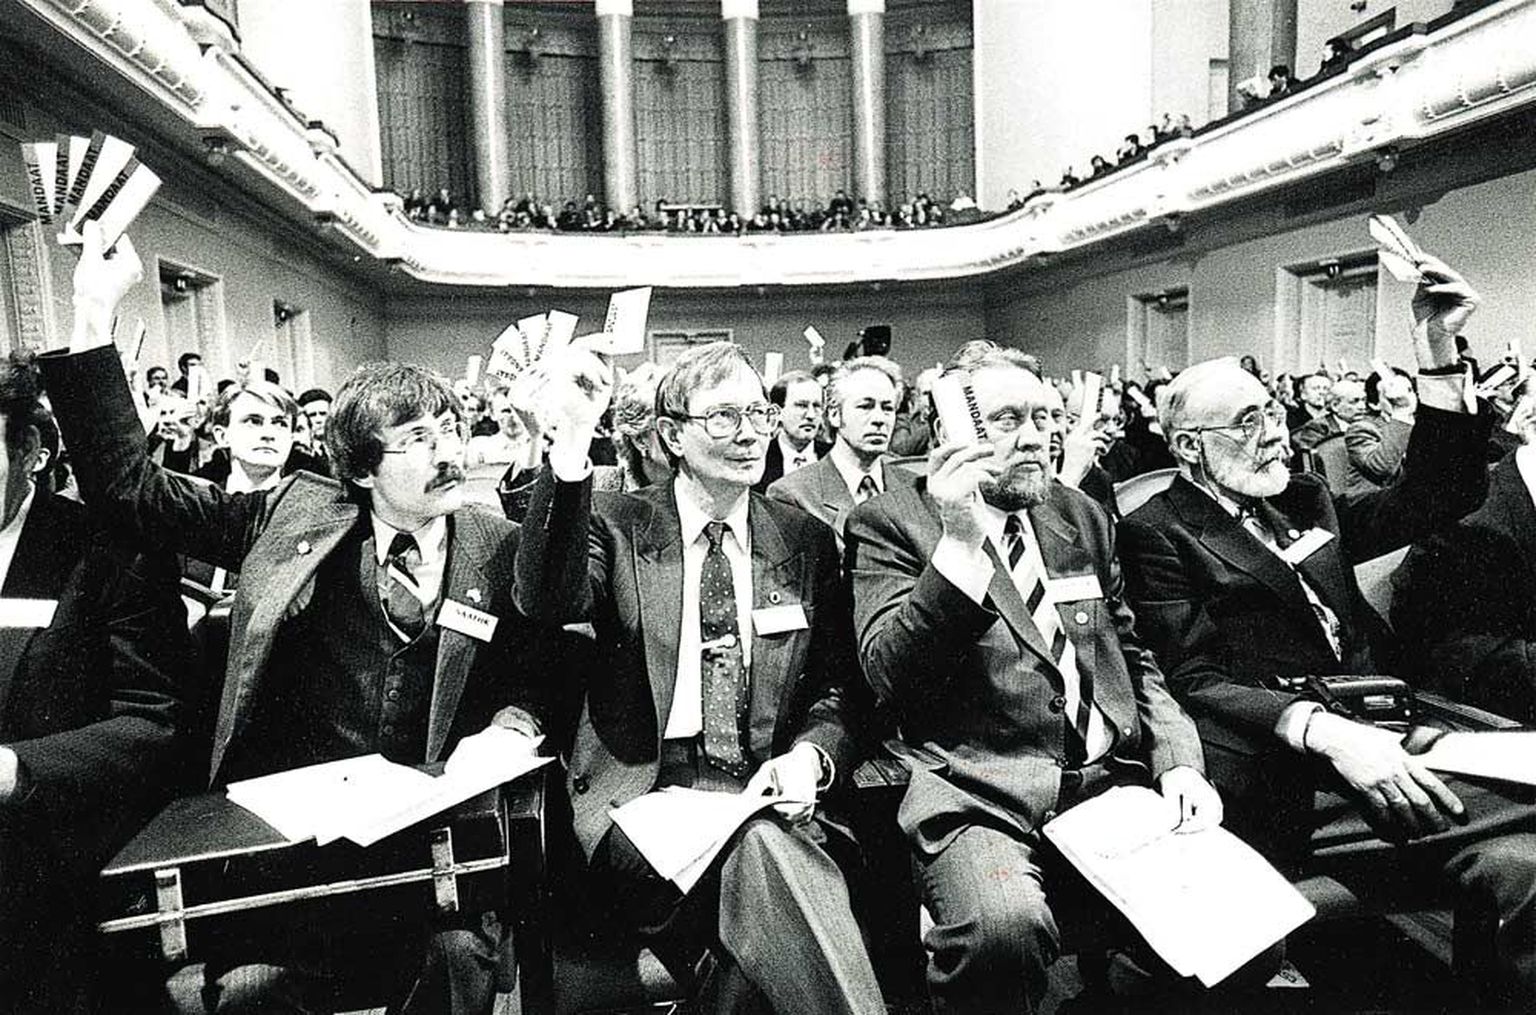 Eesti Kongressi esimene istungjärk toimus Estonia kontserdisaalis 11.-12. märtsil 1990. Esireas keskel Tunne Kelam ja Enn Tarto.